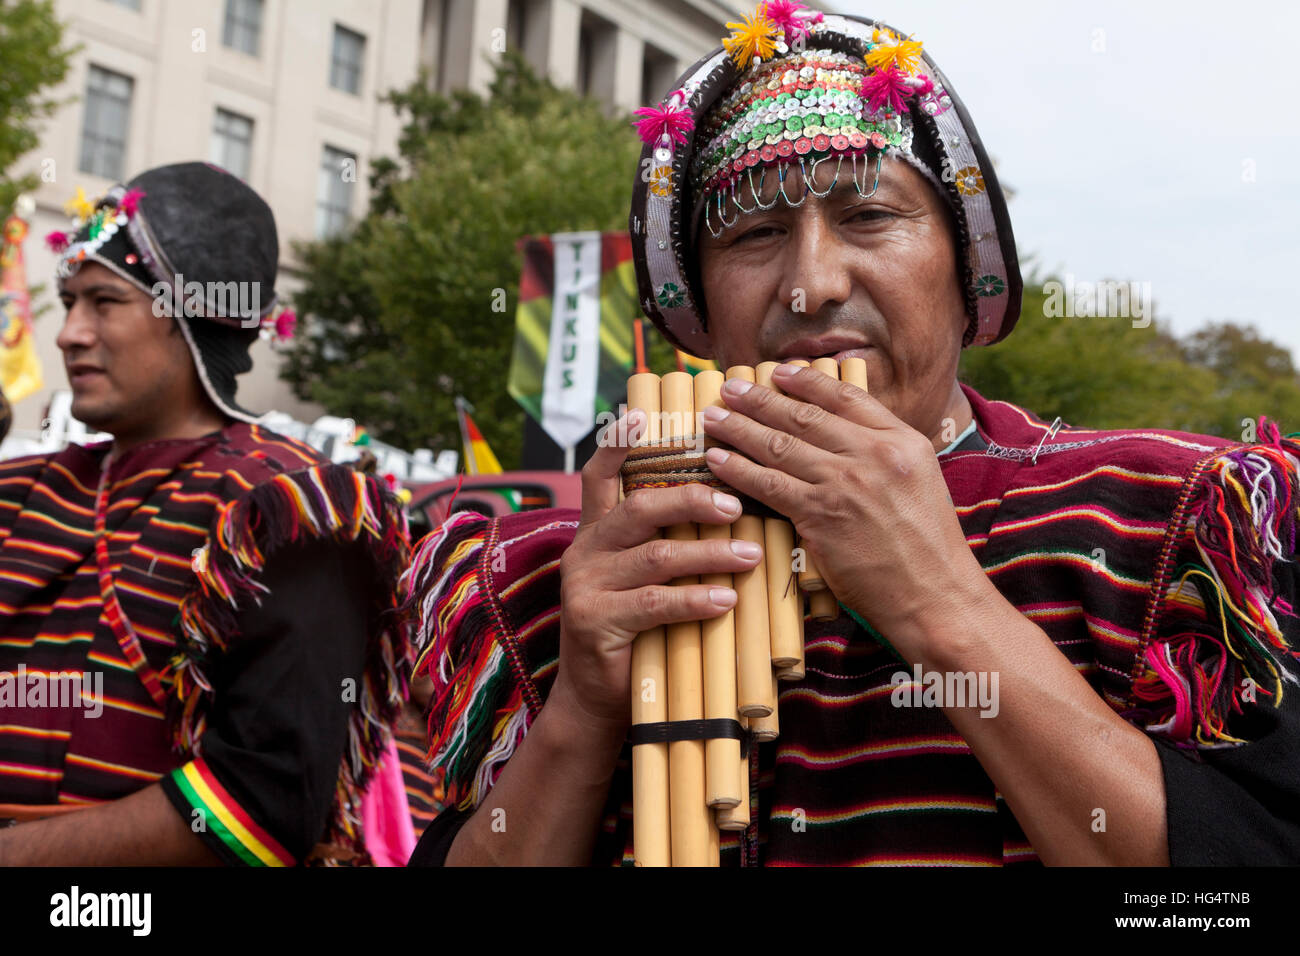 Boliviano flauto di pan giocatore al festival Latino - Washington DC, Stati Uniti d'America Foto Stock